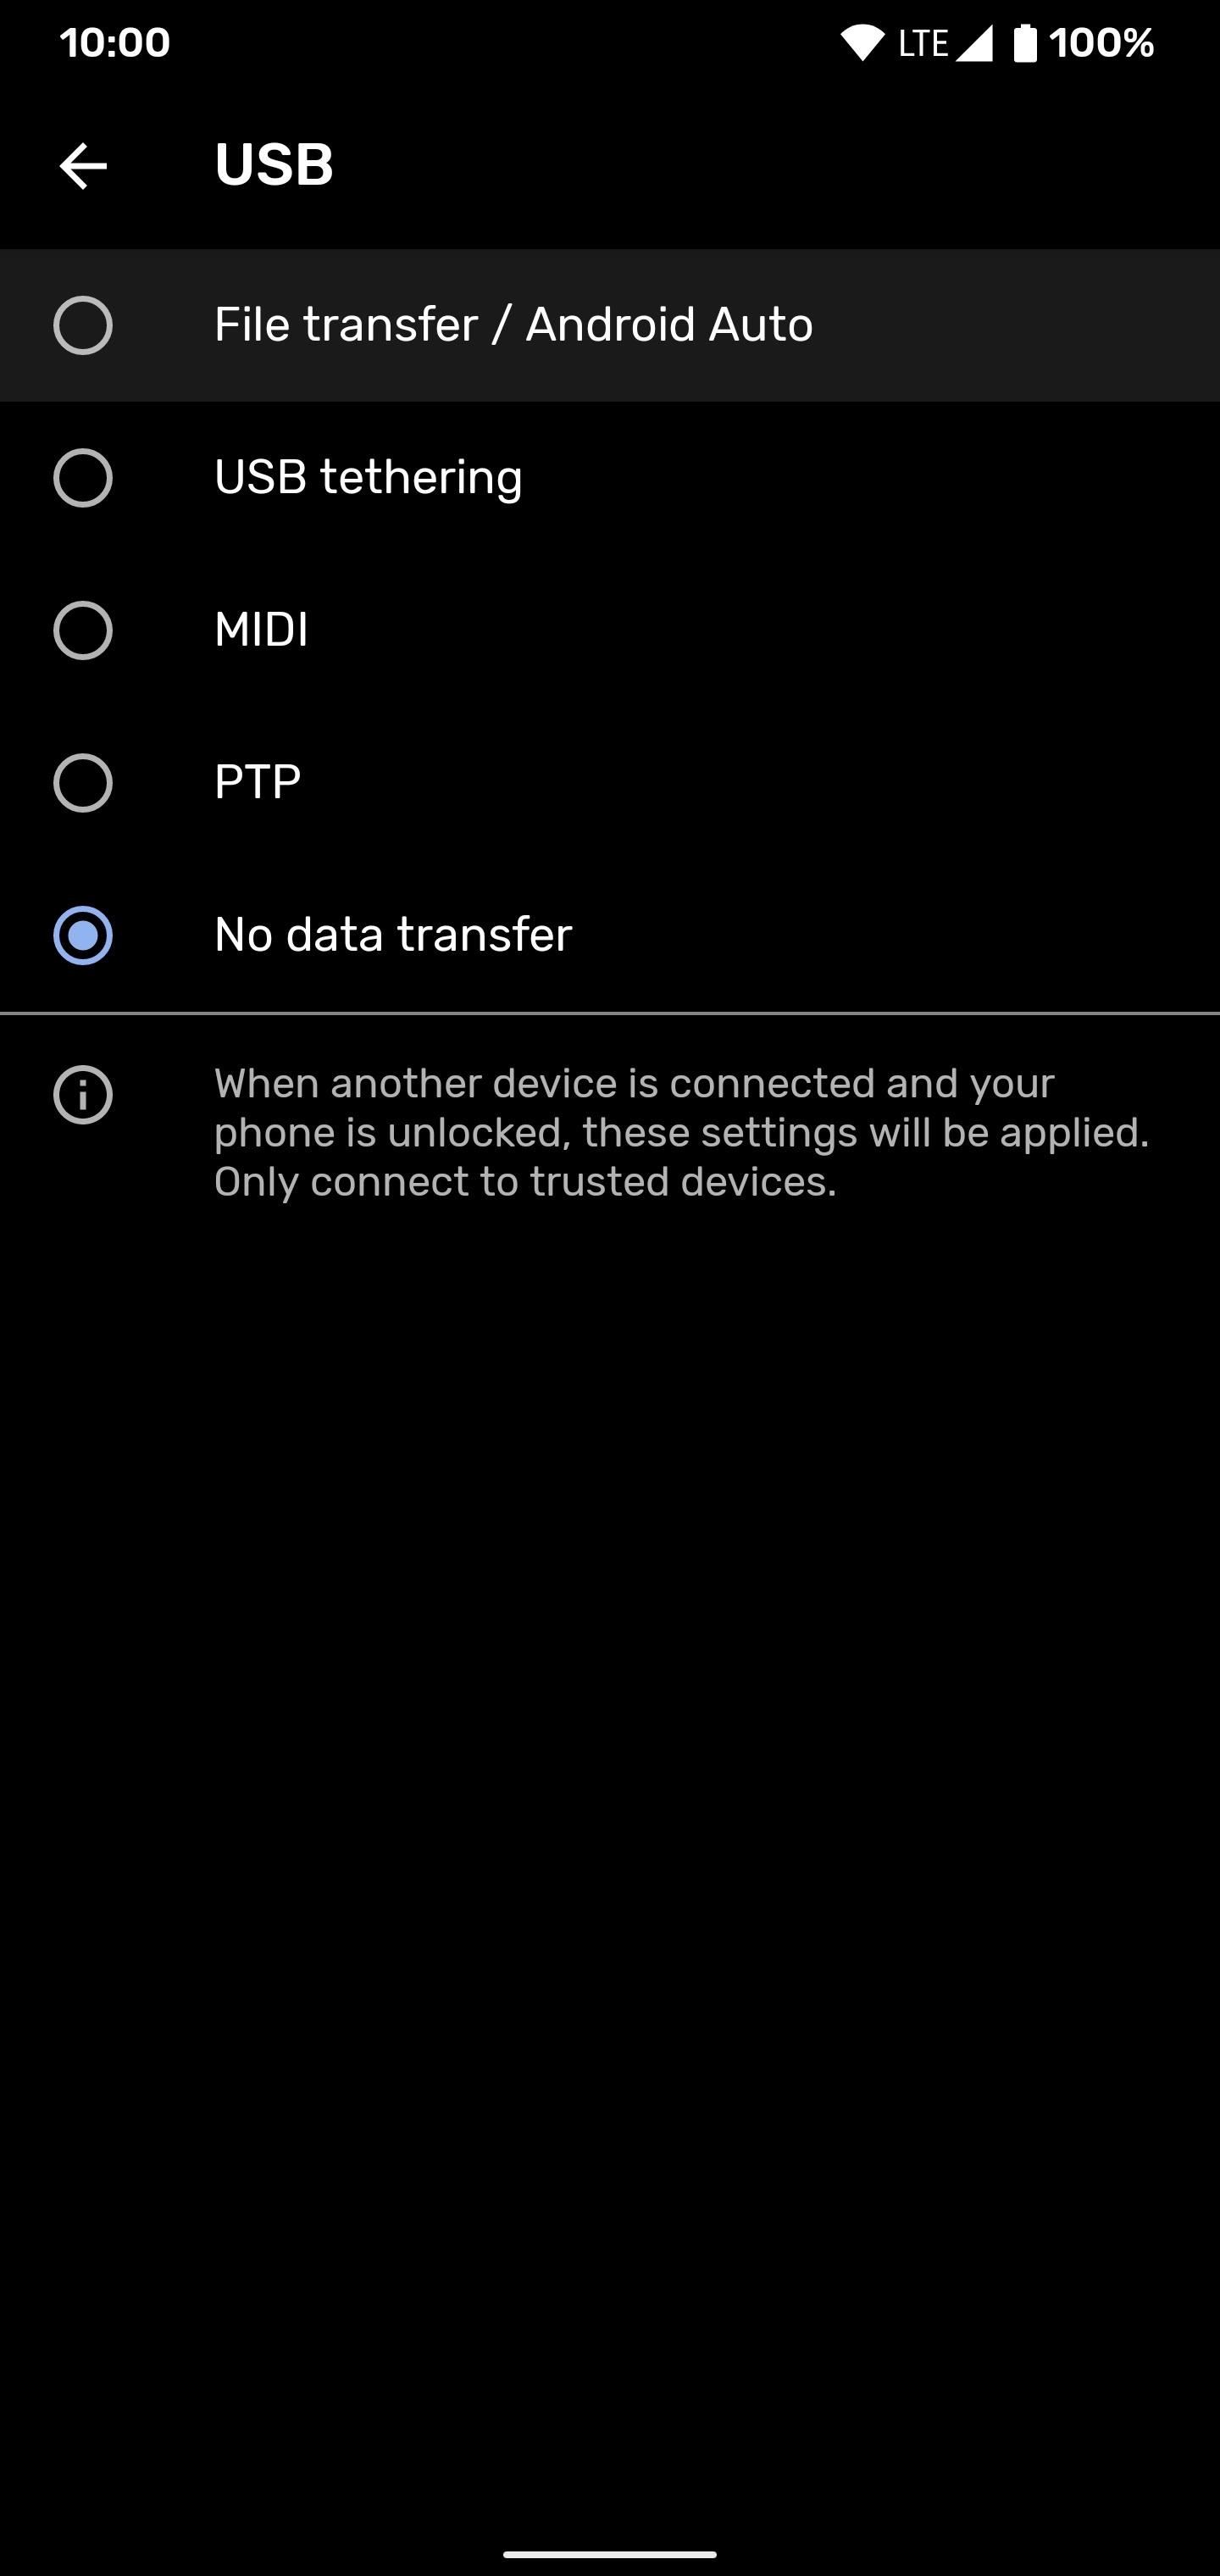 Đặt kết nối USB trên điện thoại Android của bạn mặc định sang chế độ truyền tệp